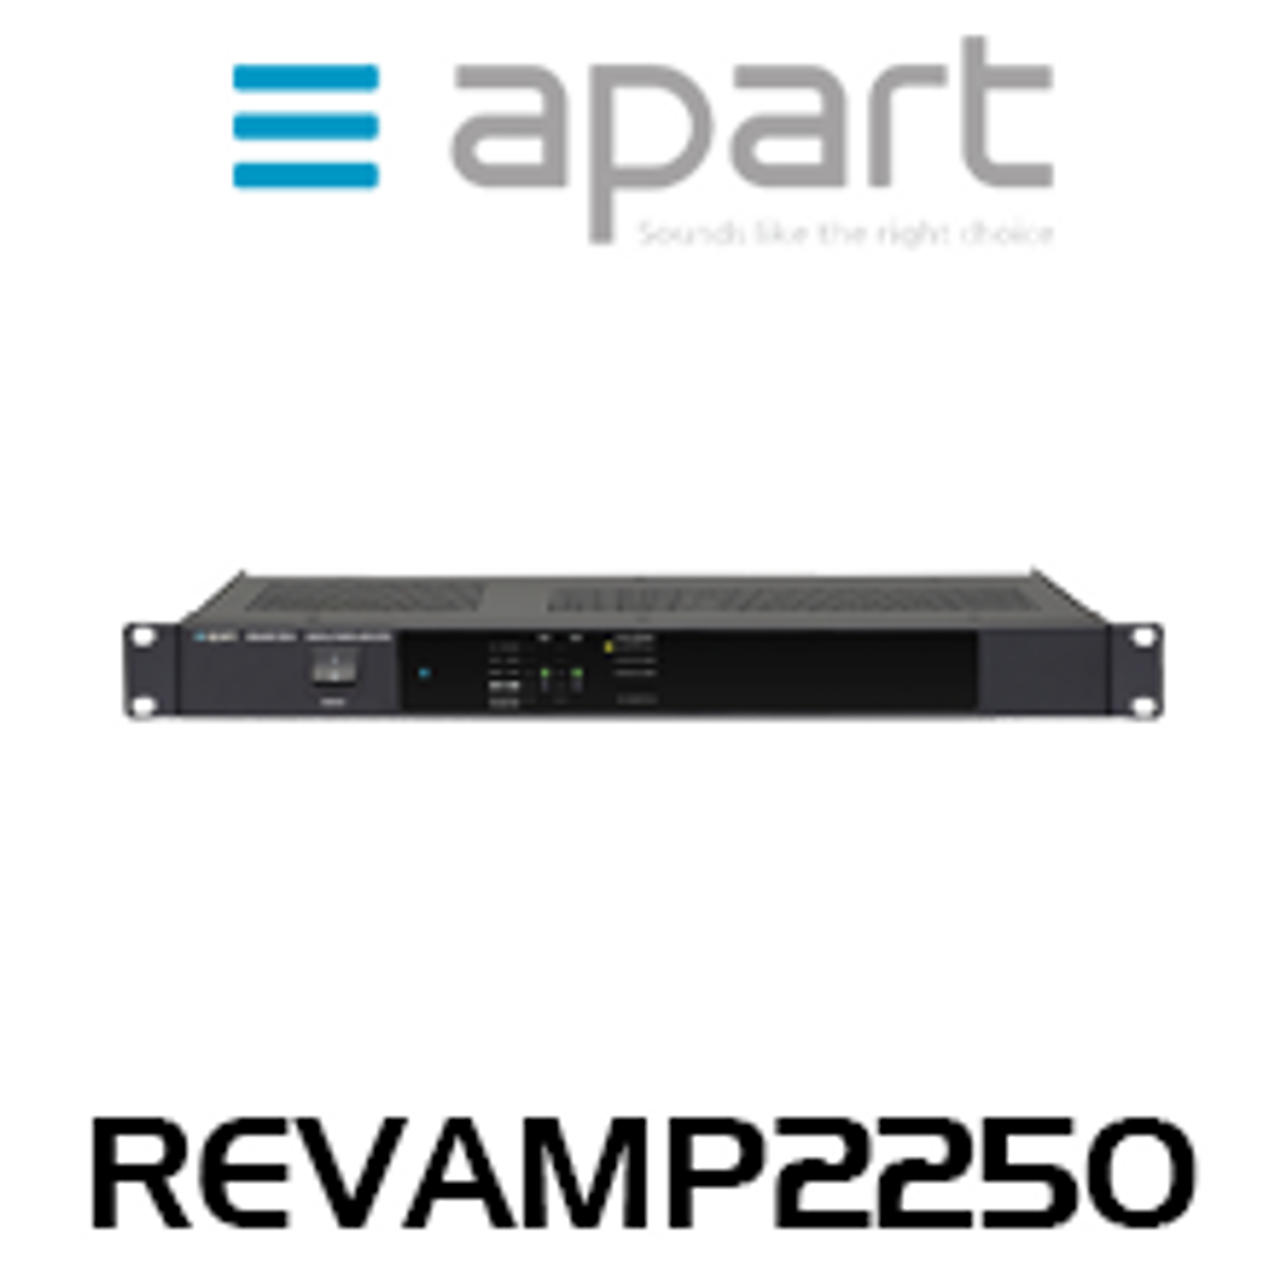 Apart REVAMP2250 2-Channel 250W Bridgeable Digital Power Amplifier